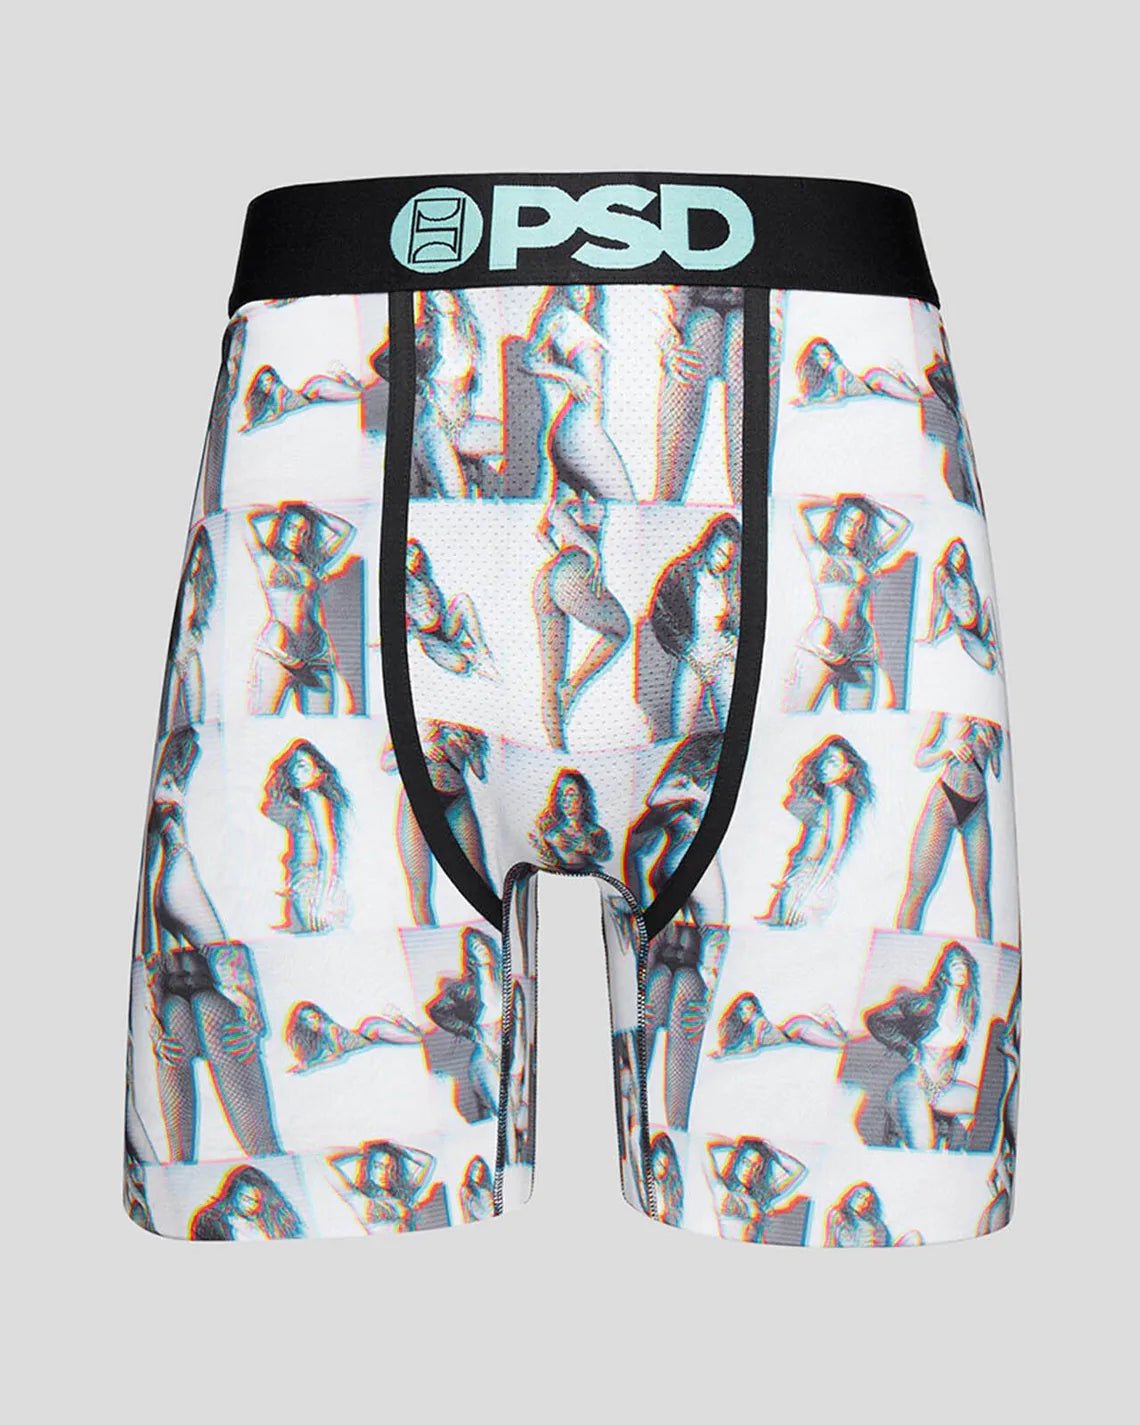 Sommer Glitch Boxer Brief - PSD Underwear – Sommer Ray's Shop